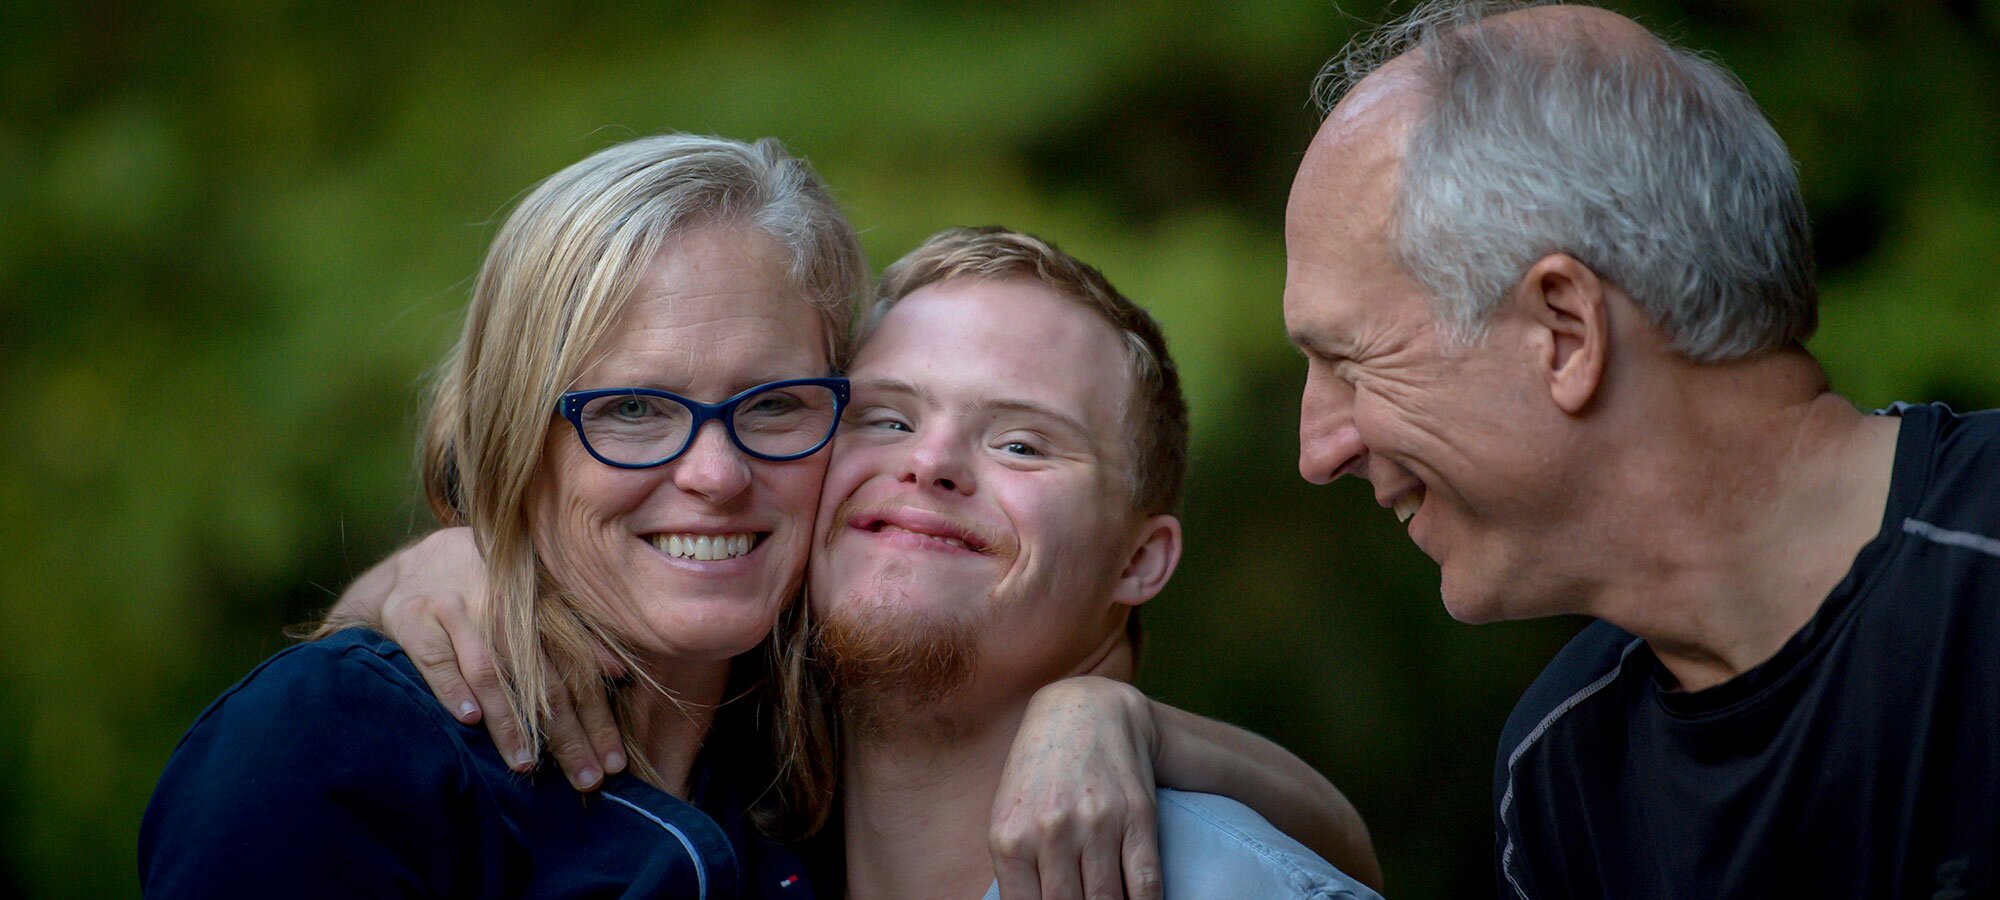 Funksjonshemmet ung mann klemmer mor, far ser på dem, alle smiler